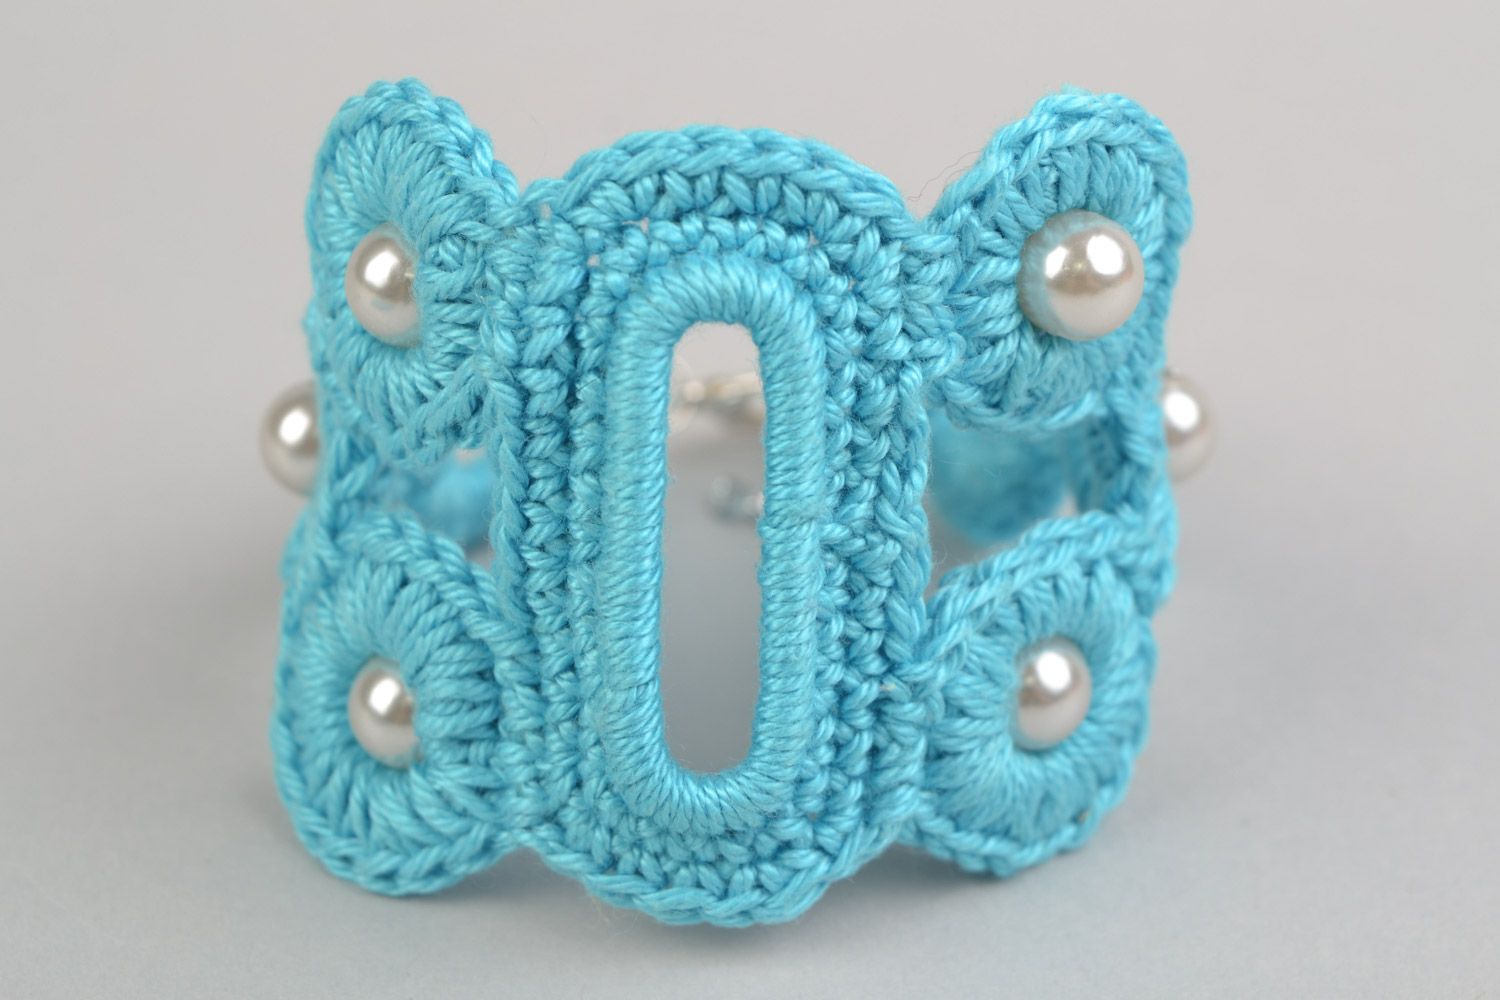 Textil Schmuckset 2 Stück Ohrringe und Armband aus Fäden geflochten in Blau handmade foto 3